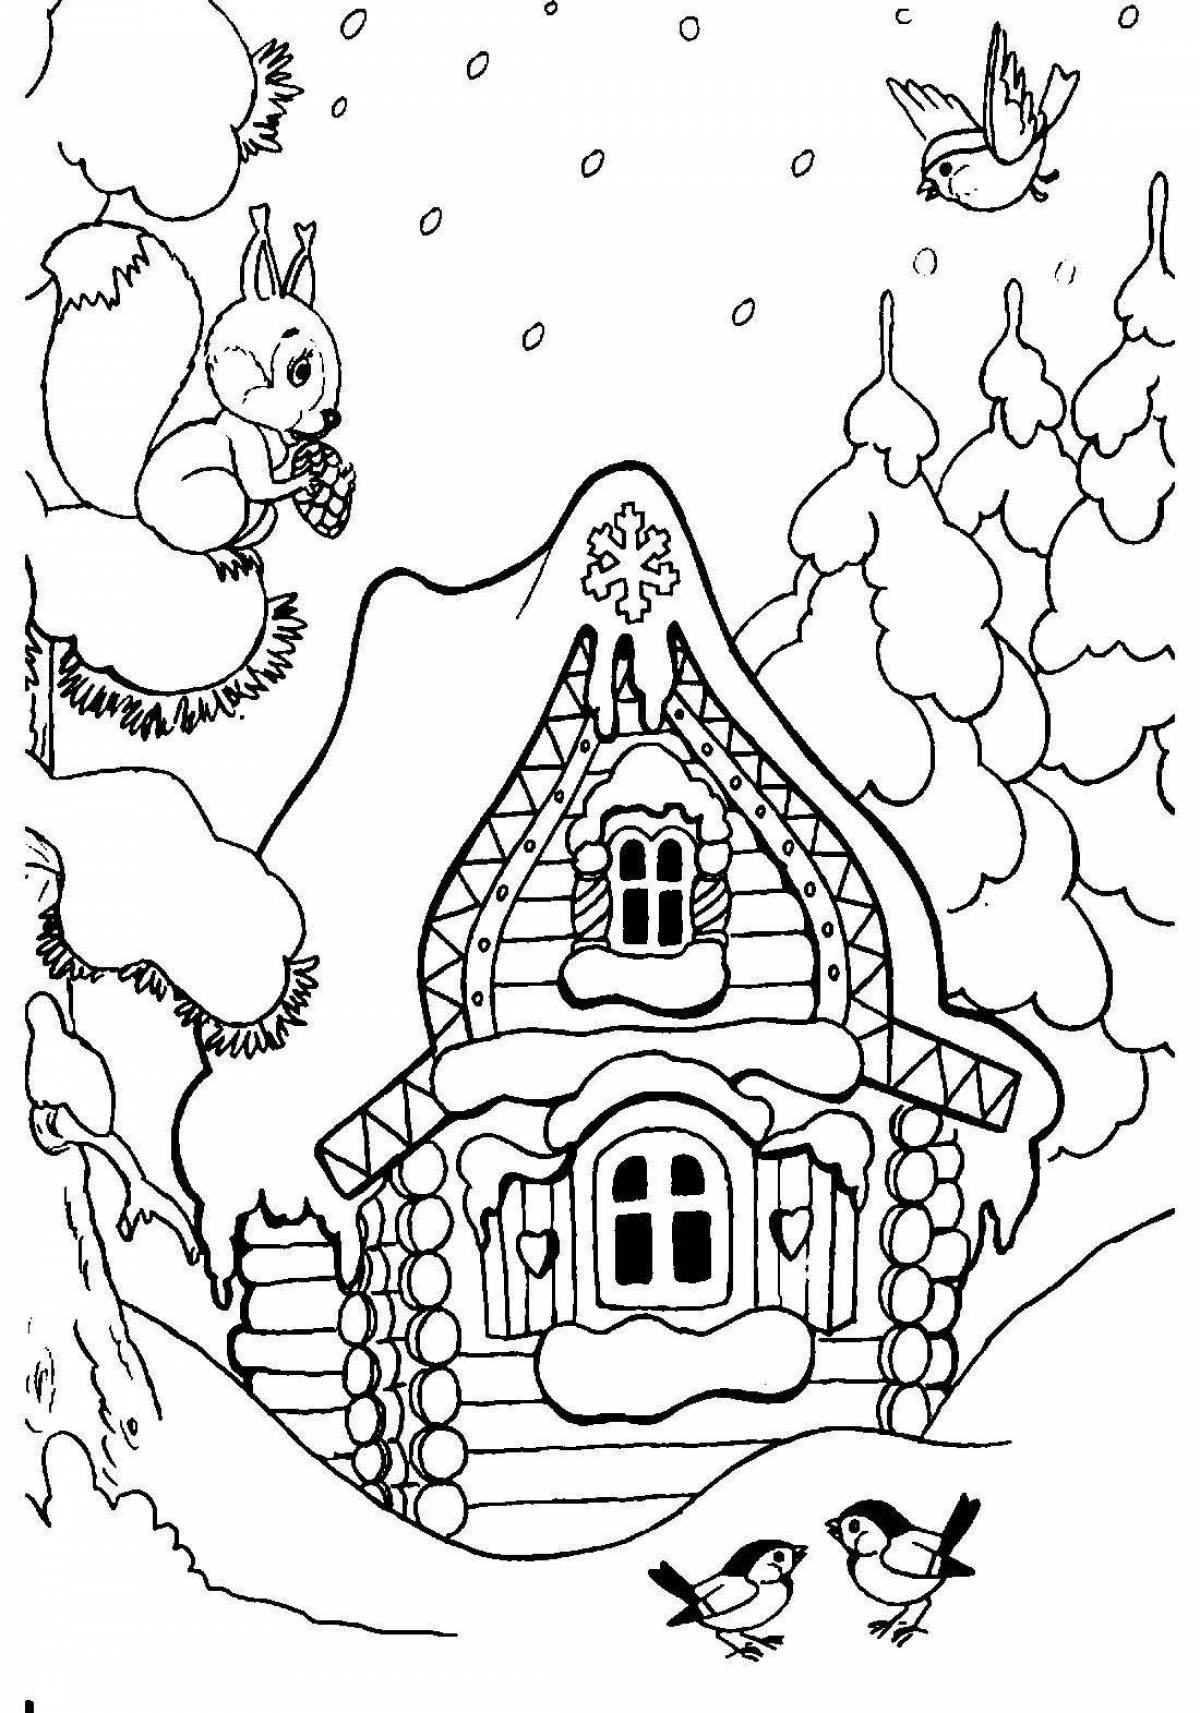 Humorous winter hut coloring book